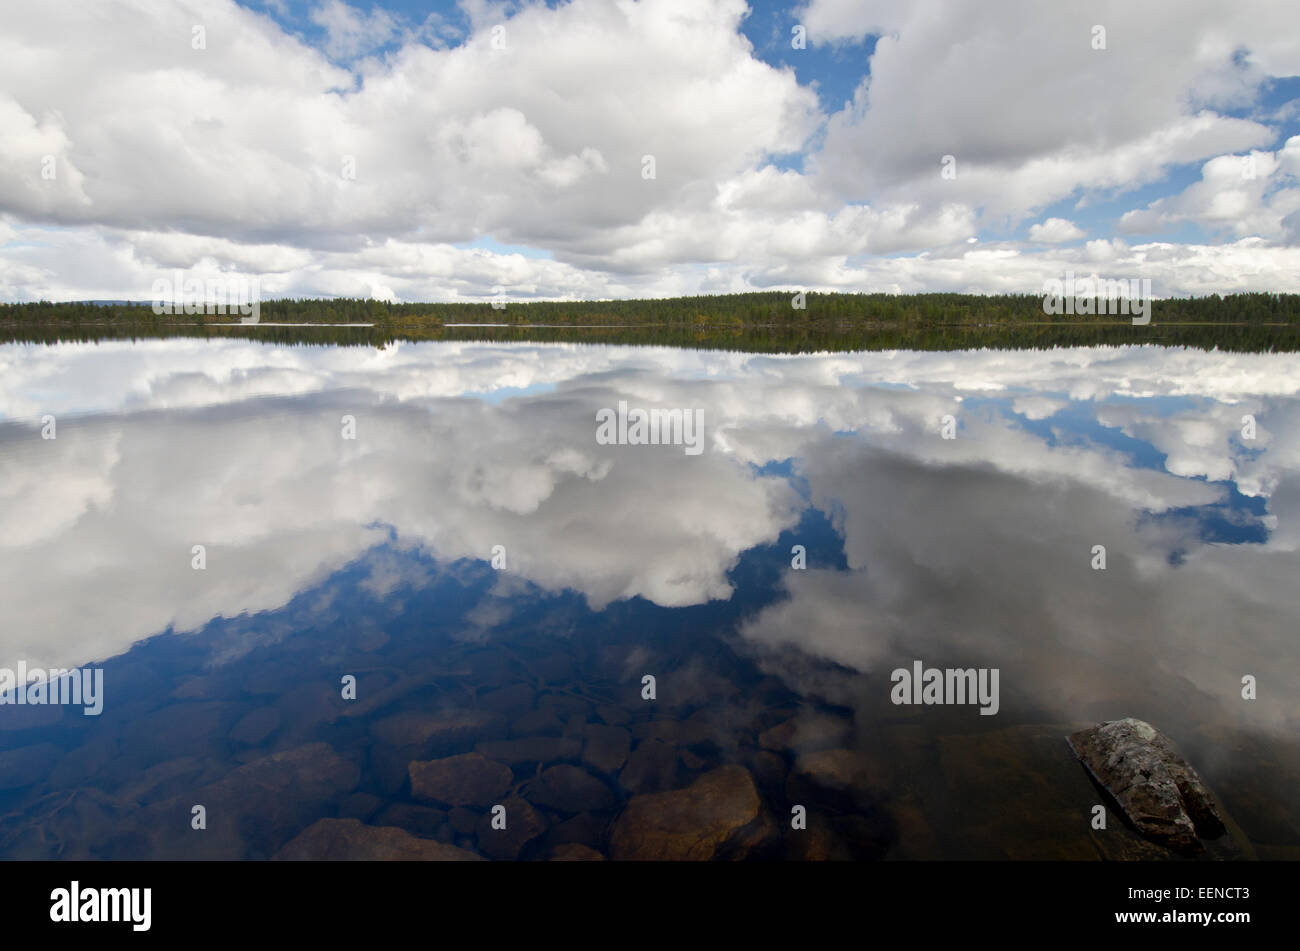 Wolken spiegeln sich in einem See im Naturreservat Rogen, Haerjedalen, Schweden, August 2011 Stock Photo